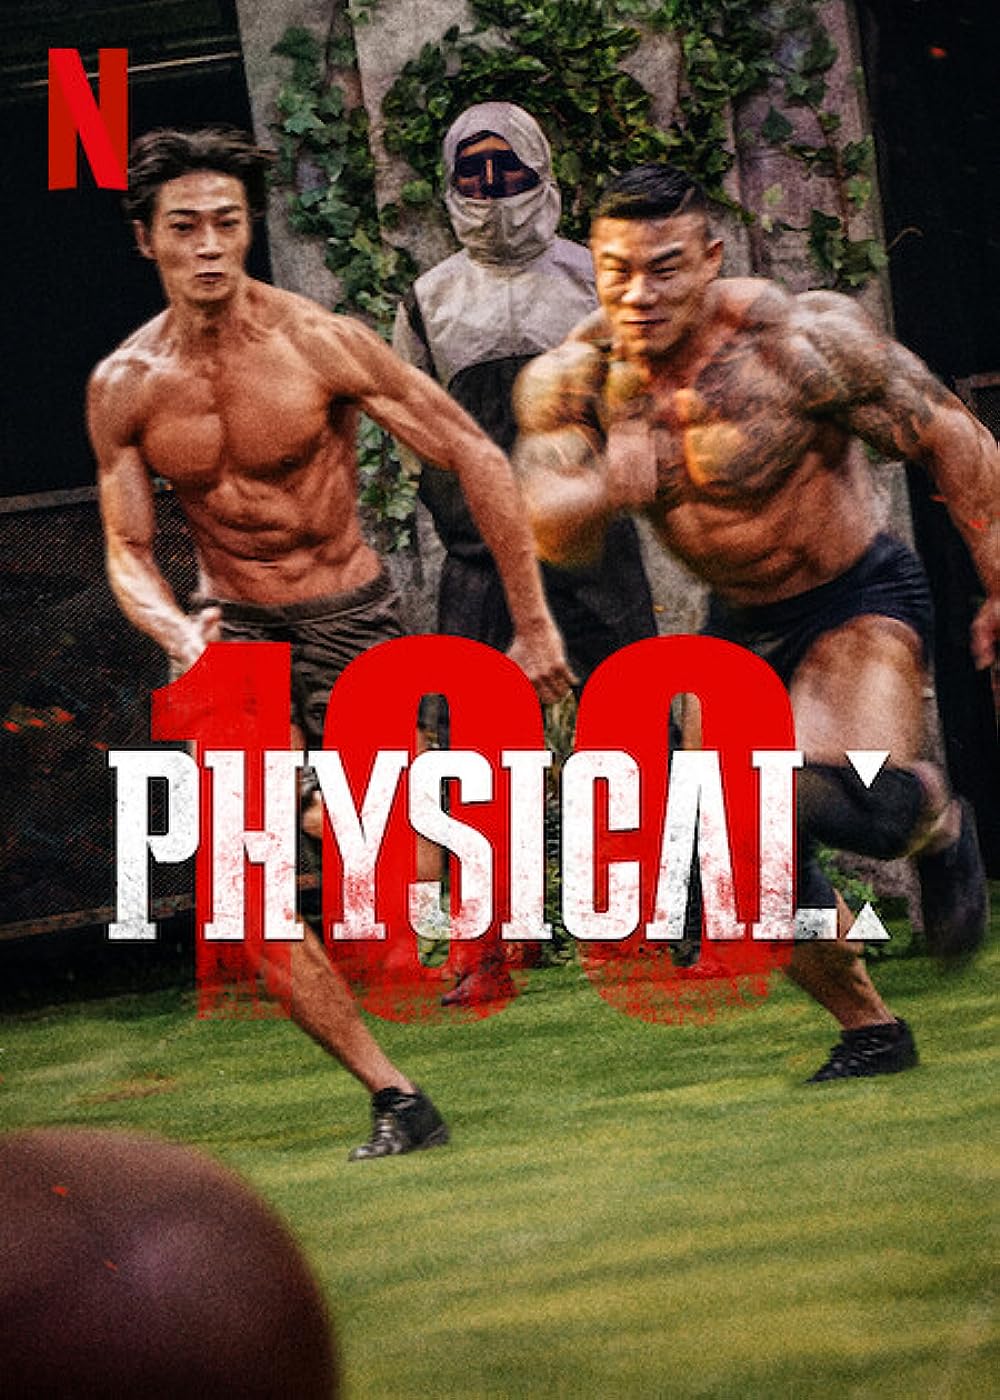 Physical: 100